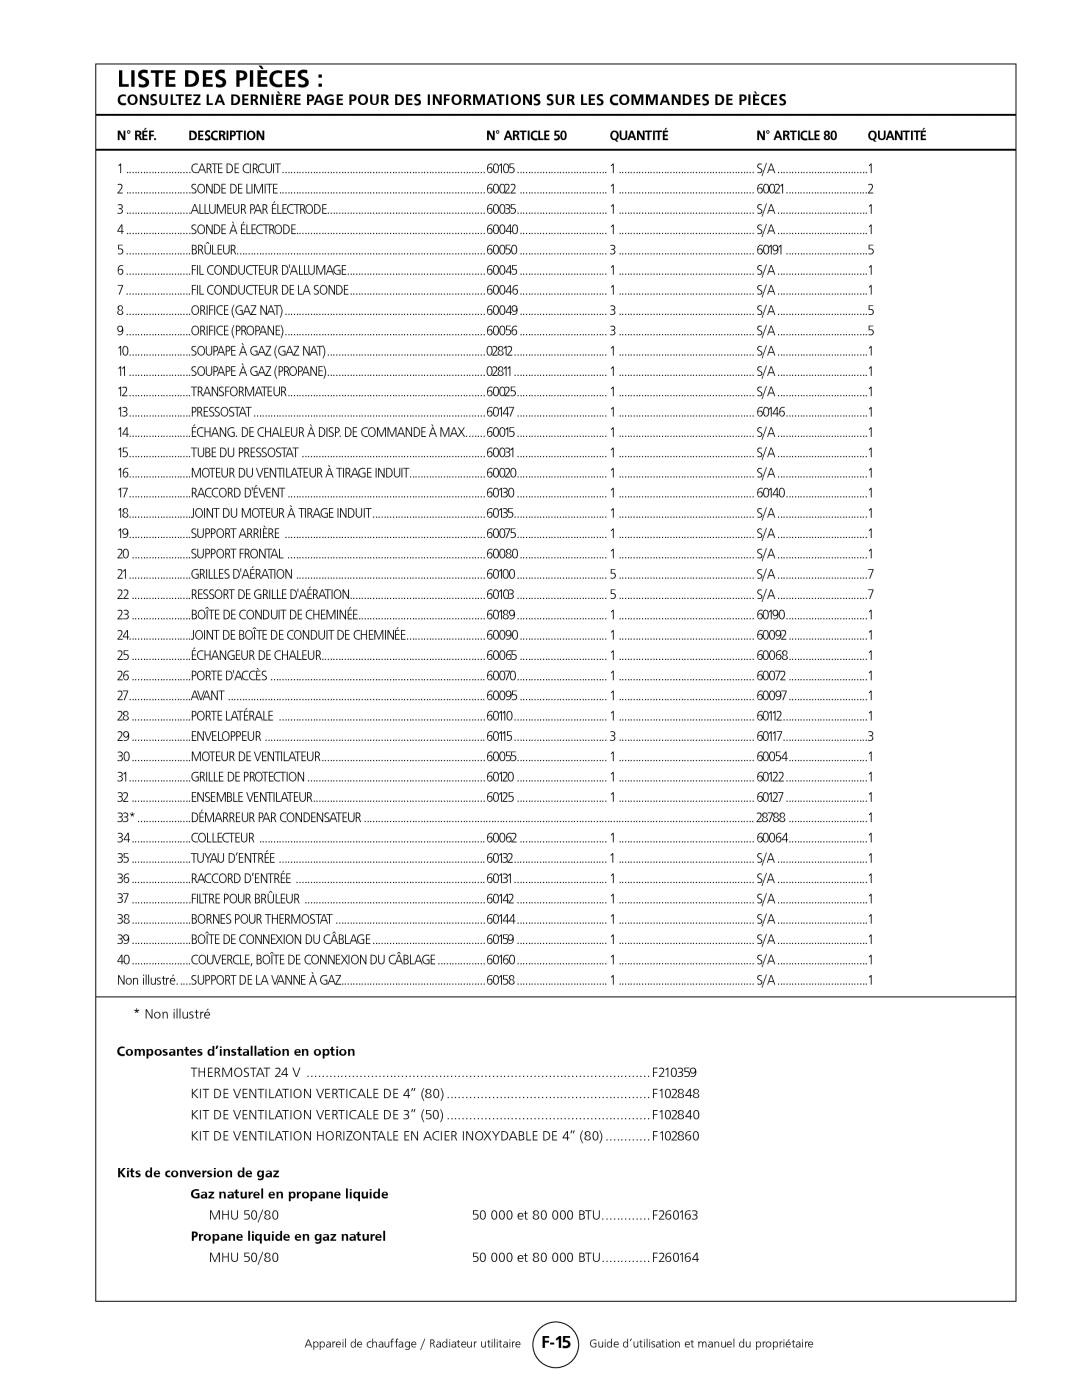 Mr. Heater MHU 80, MHU 50 Liste Des Pièces, N Réf, Description, N Article, Quantité, Composantes d’installation en option 